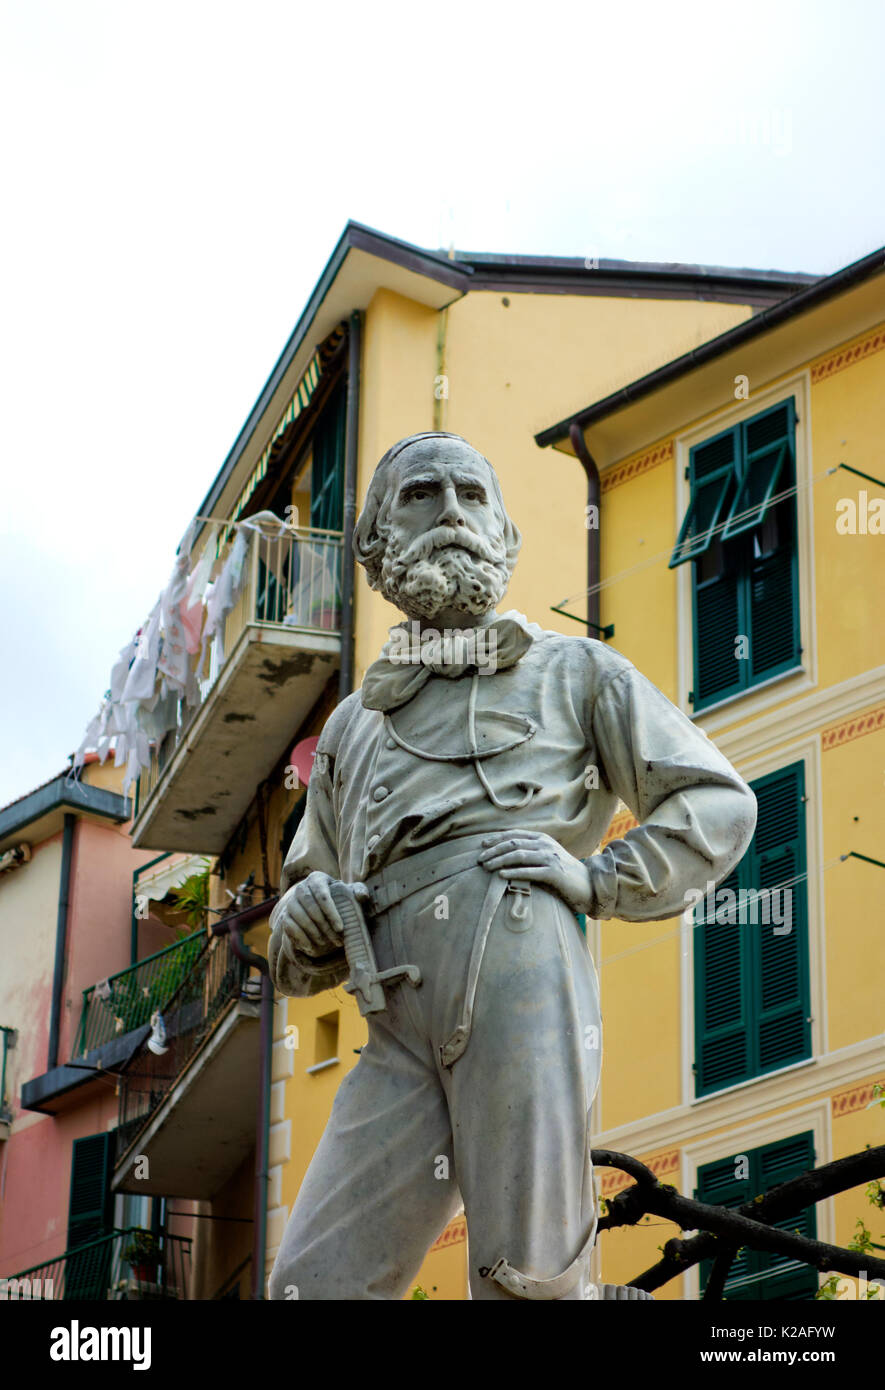 Marble statue of Garibaldi in a piazza, Monterosso al Mare, Italy, 2017. Stock Photo